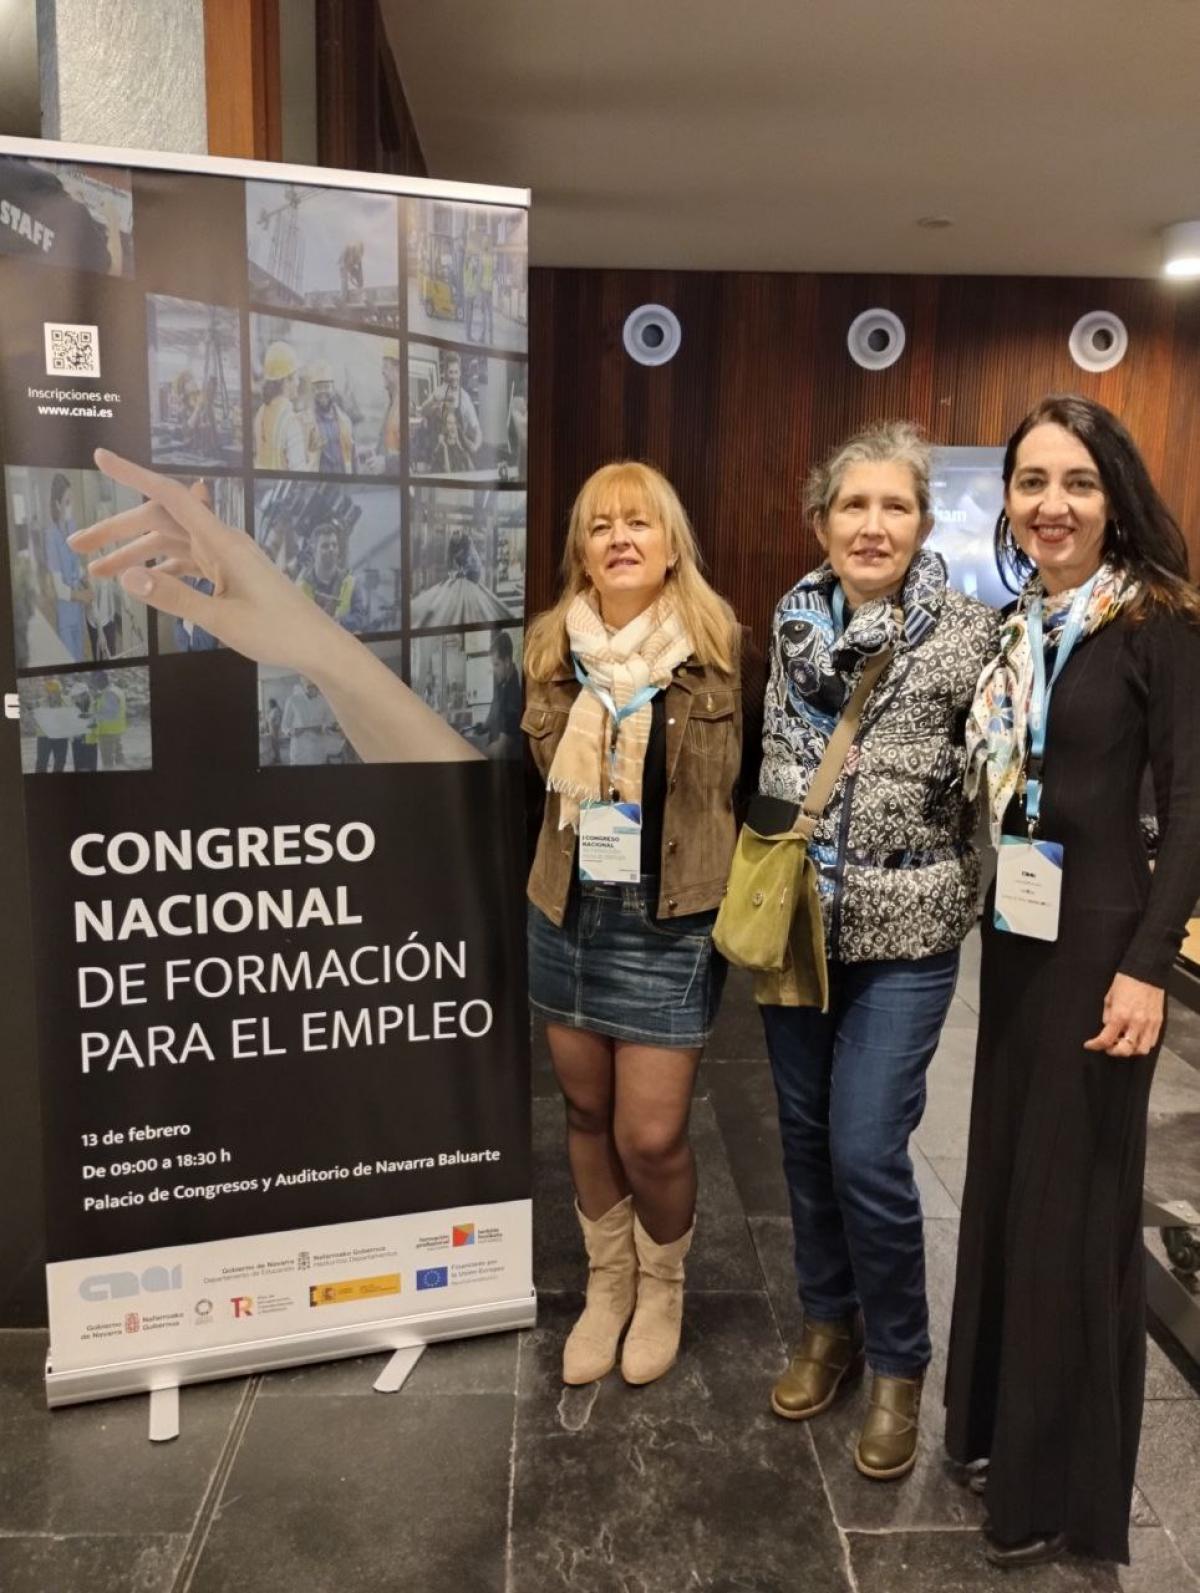 Nuestra representación en el primer Congreso Nacional de Formación para el Empleo celebrado en el Palacio de Congresos y Auditorio de Navarra Baluarte